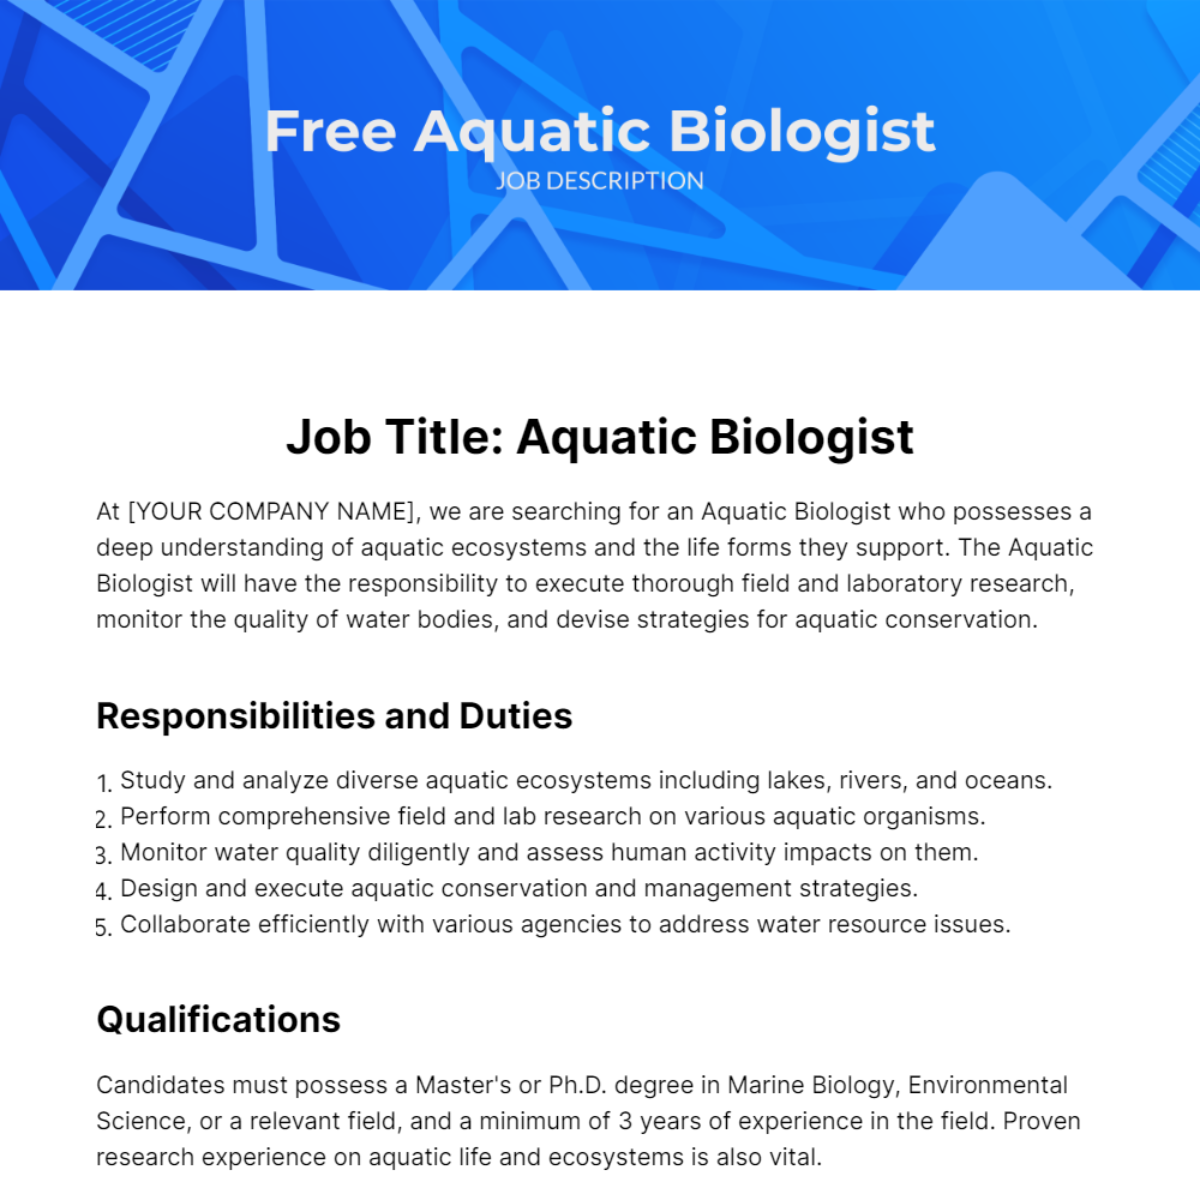 Free Aquatic Biologist Job Description Template